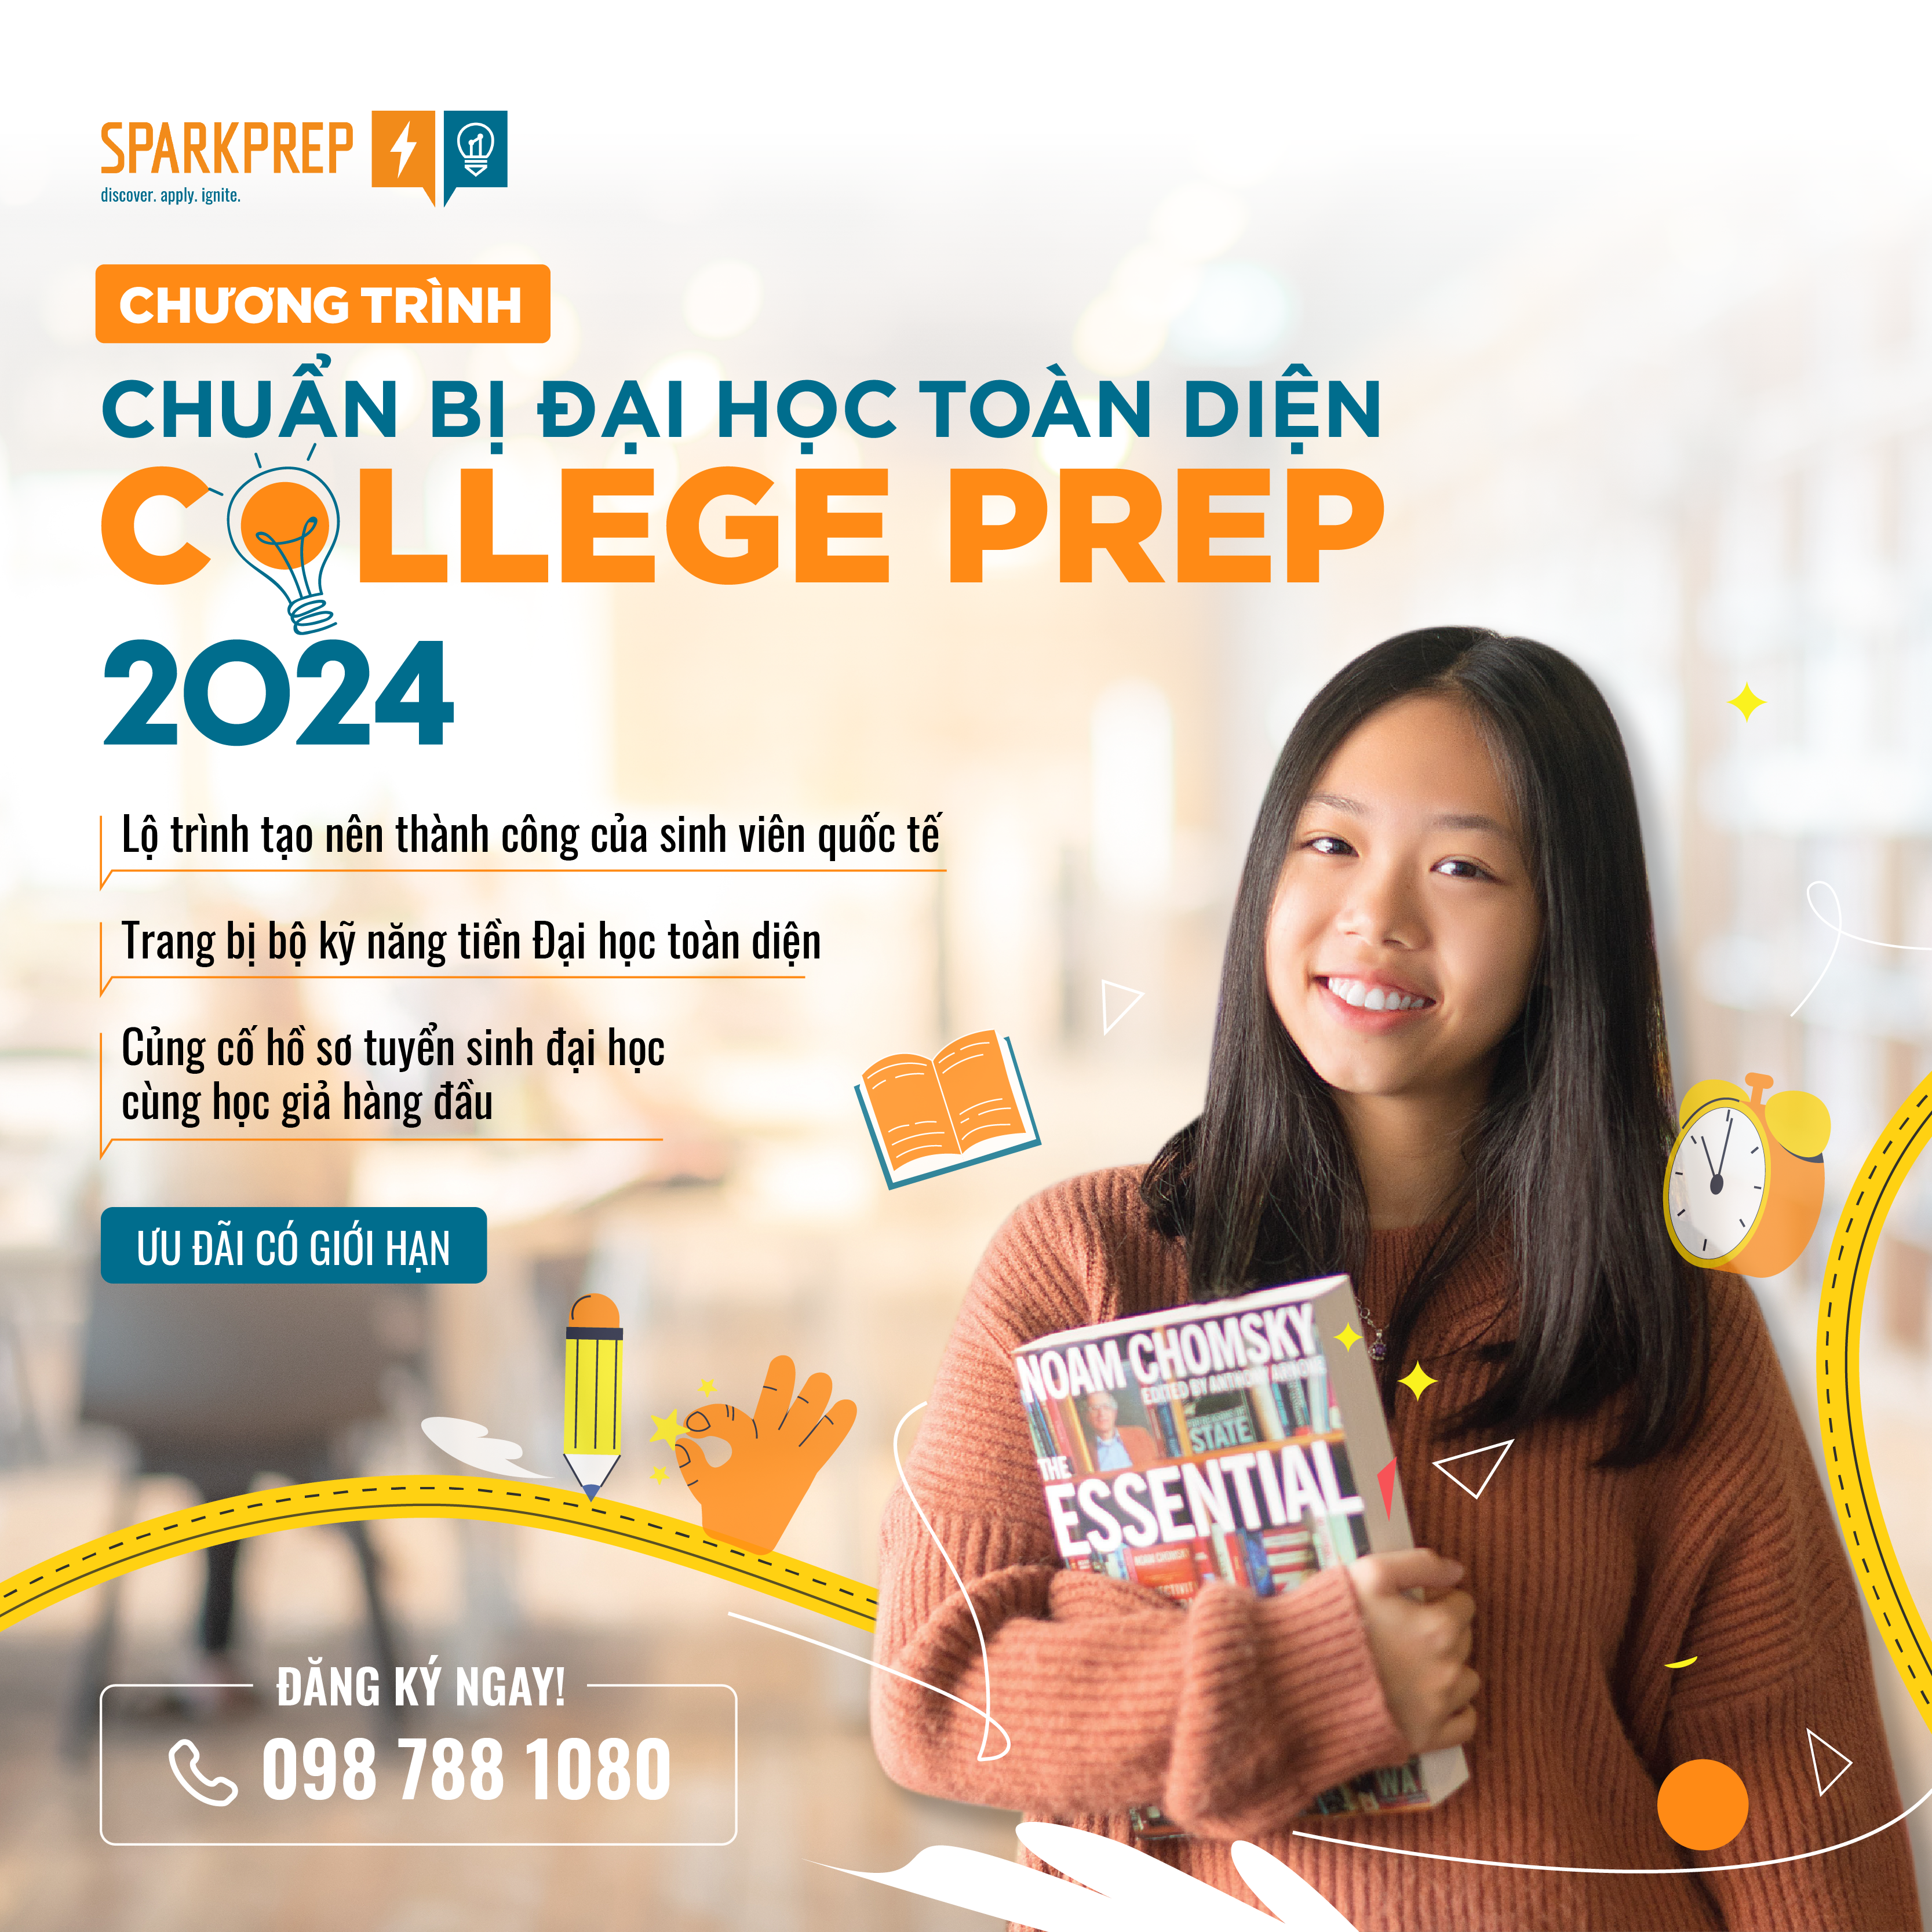 Chương trình chuẩn bị Đại học toàn diện Spark Prep 2024